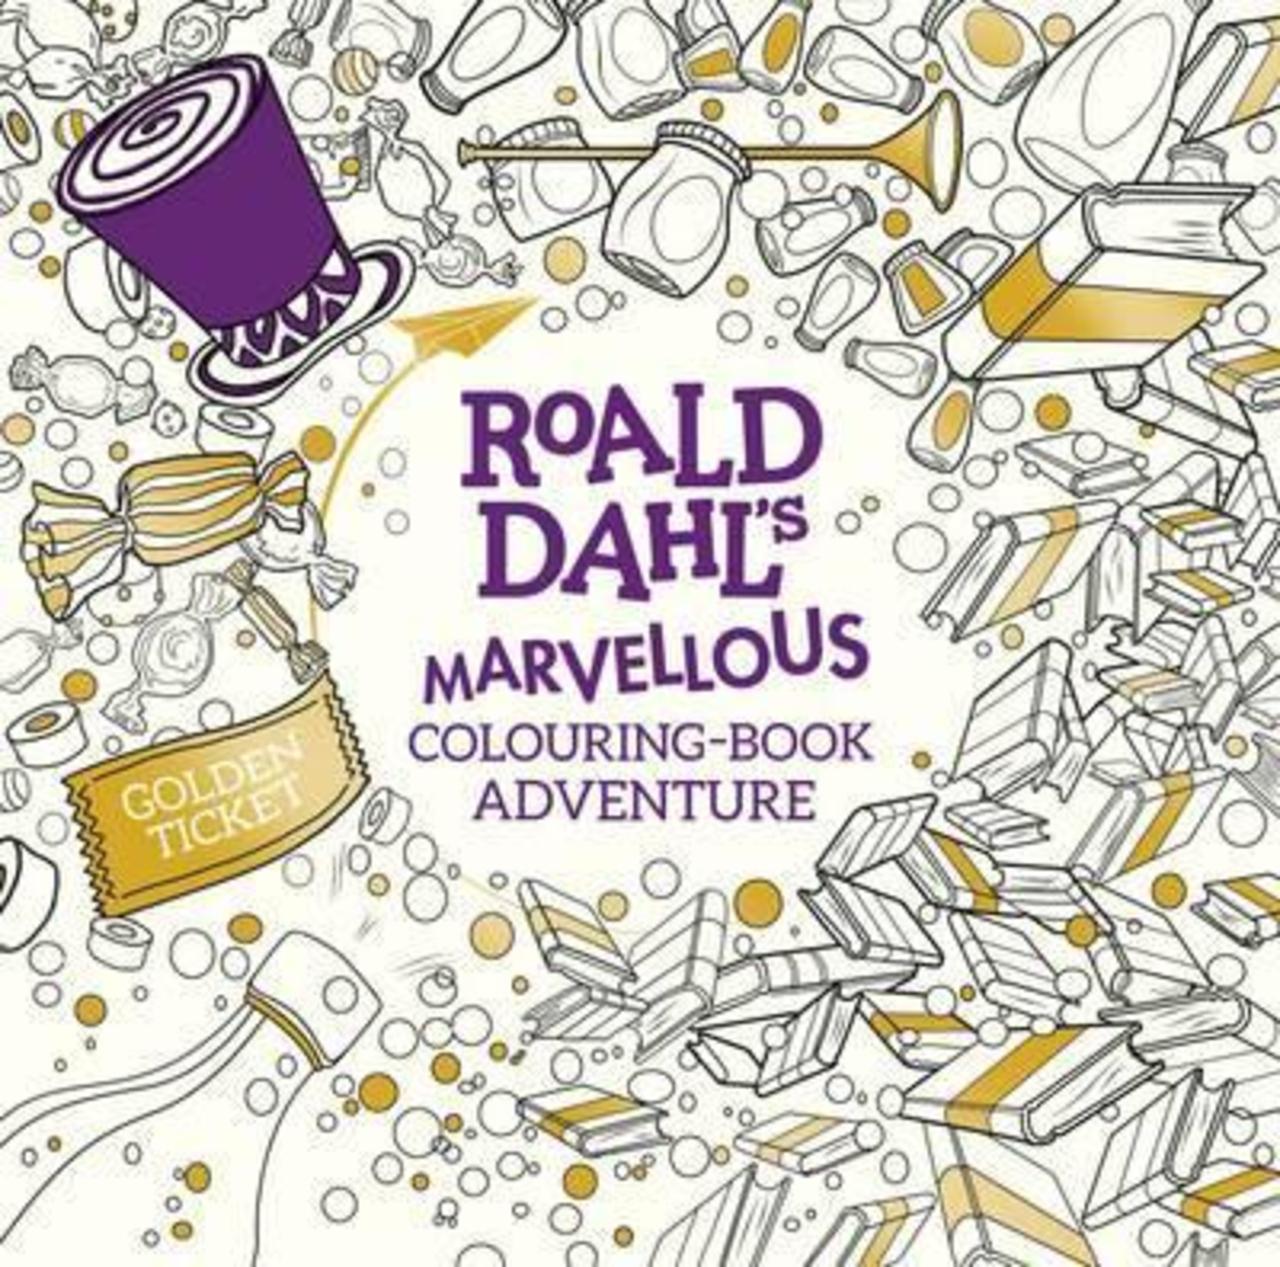 Sách - Roald Dahl's Marvellous Colouring-Book Adventure by DAHL ROALD (UK edition, paperback)